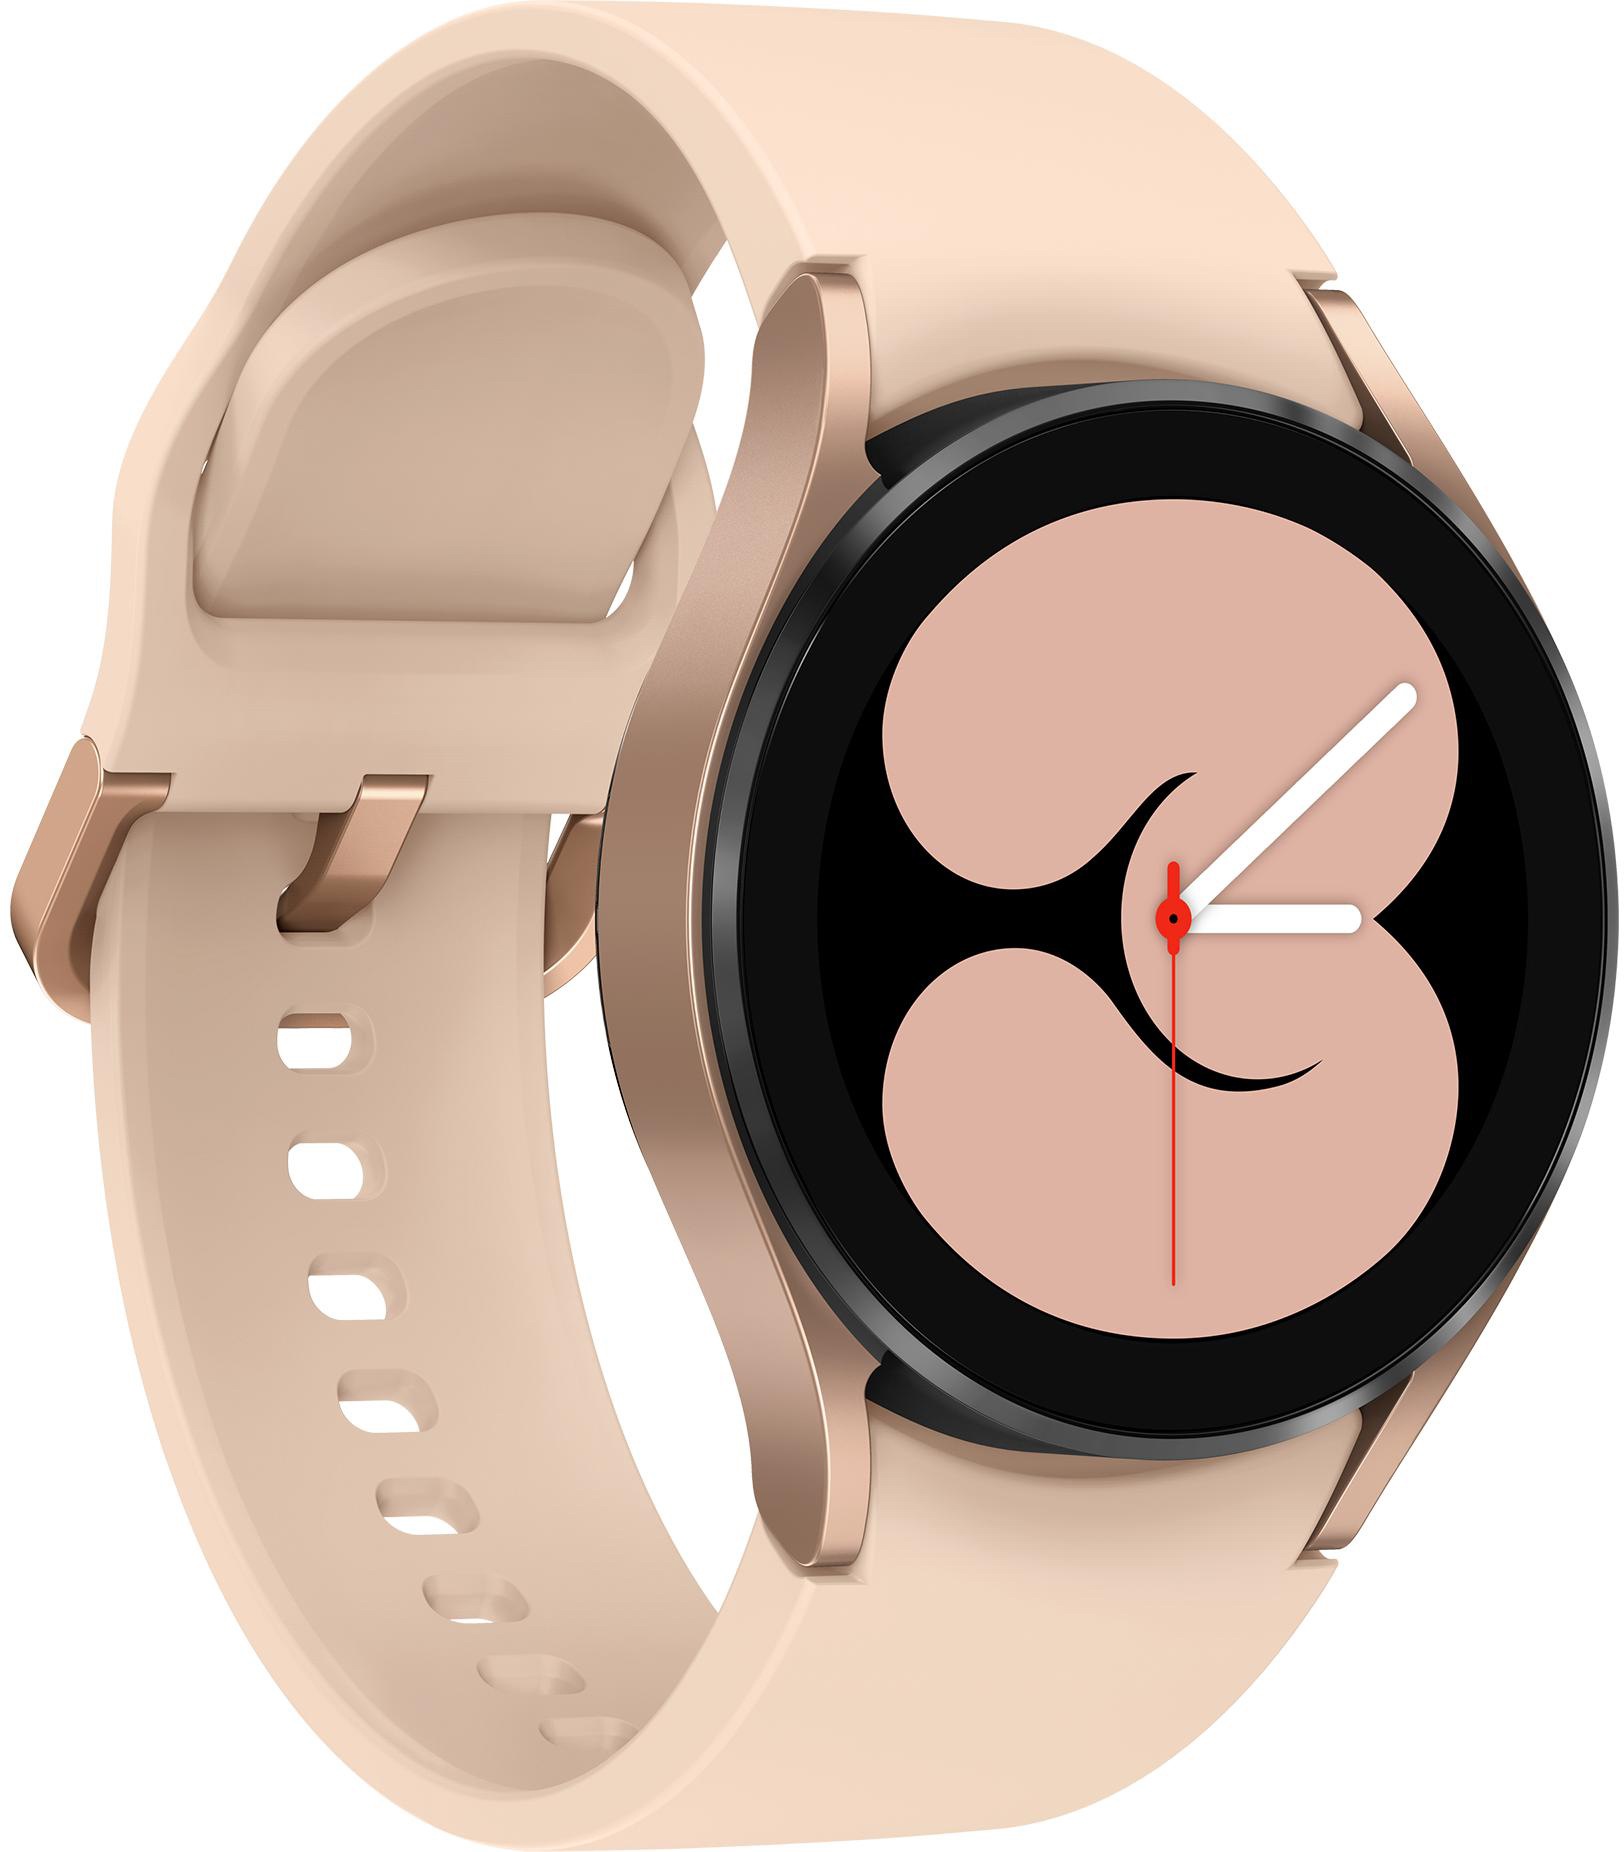 Samsung Smartwatch »Galaxy Watch OS 4 (Wear mm«, Google) bei BT, OTTO by 40